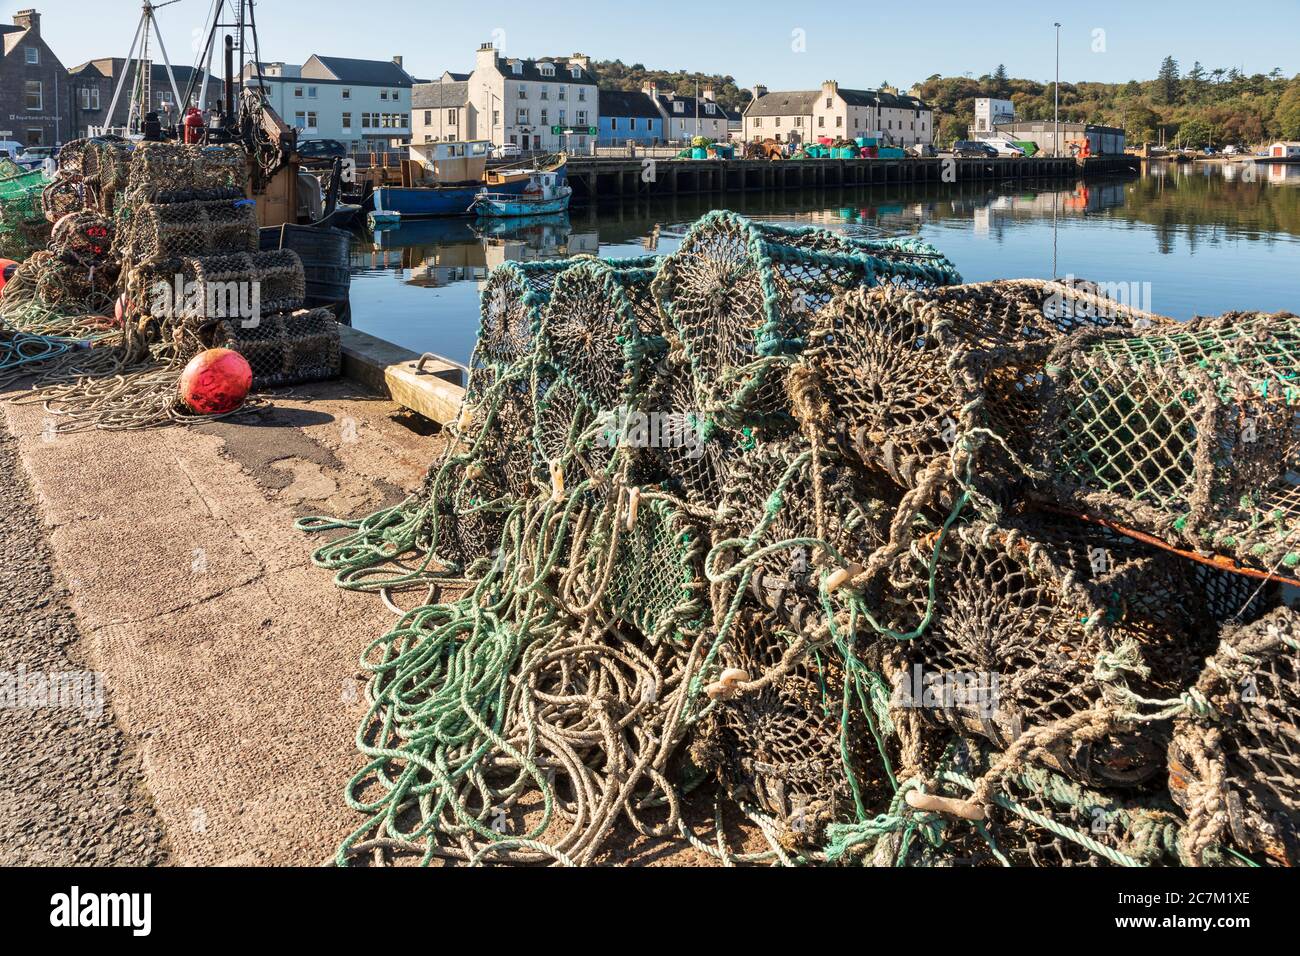 Creels de langosta en el puerto de Stornoway, Isla de Lewis, Hébridas Exteriores, Escocia Foto de stock